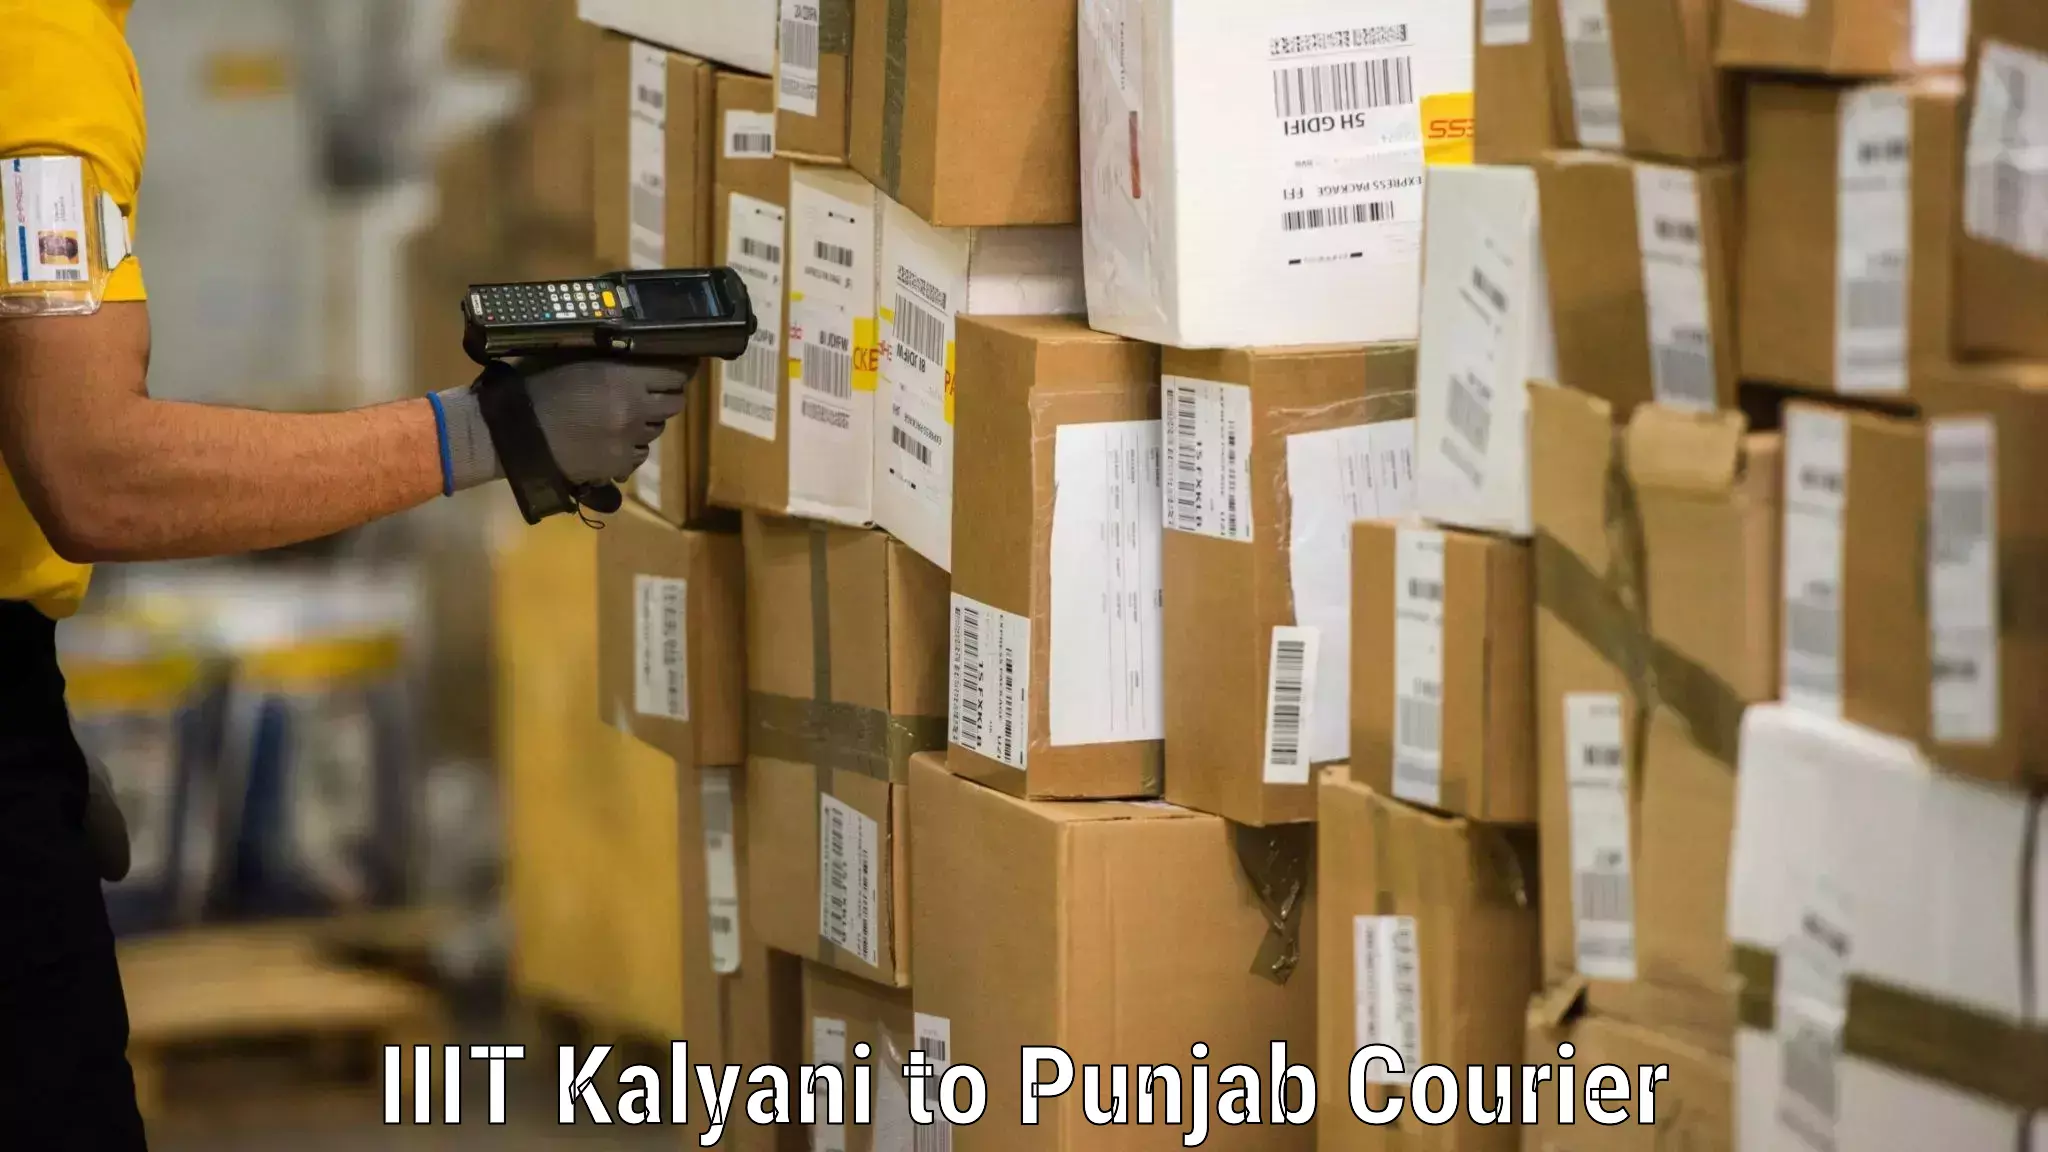 Furniture transport and logistics IIIT Kalyani to Punjab